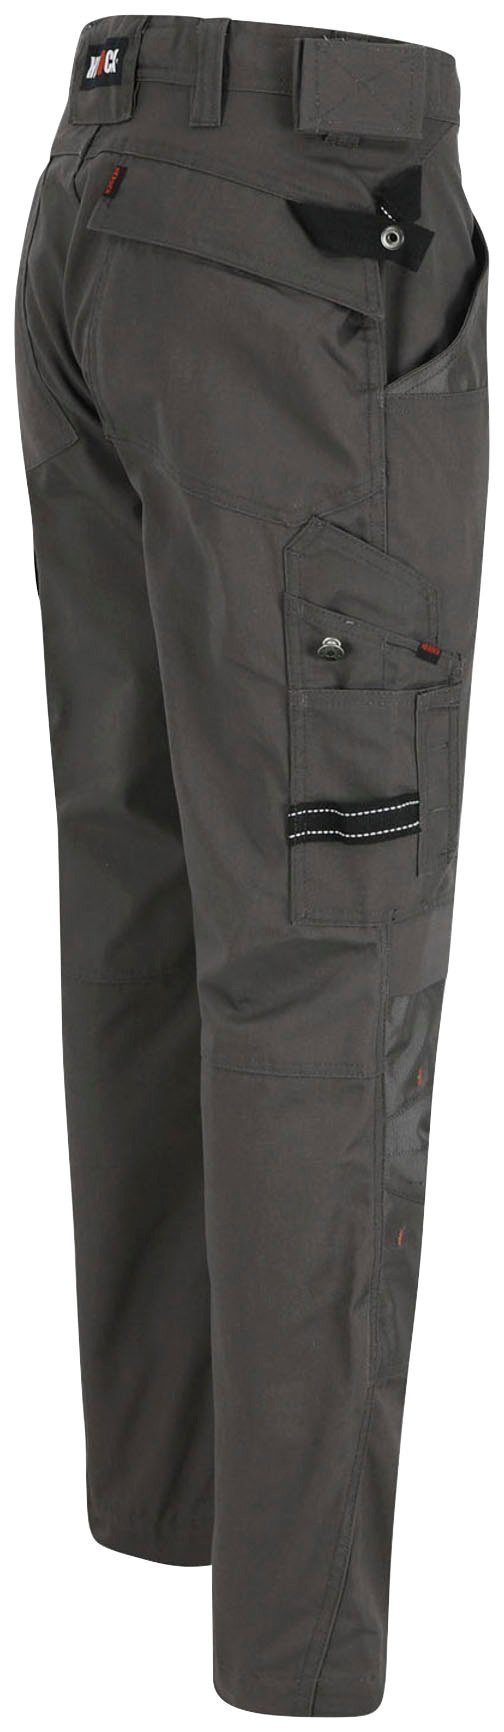 Wasserabweisend Taschen grau - & Arbeitshose Hose Bund leicht bequem - Apollo Herock - Regelbarer 8